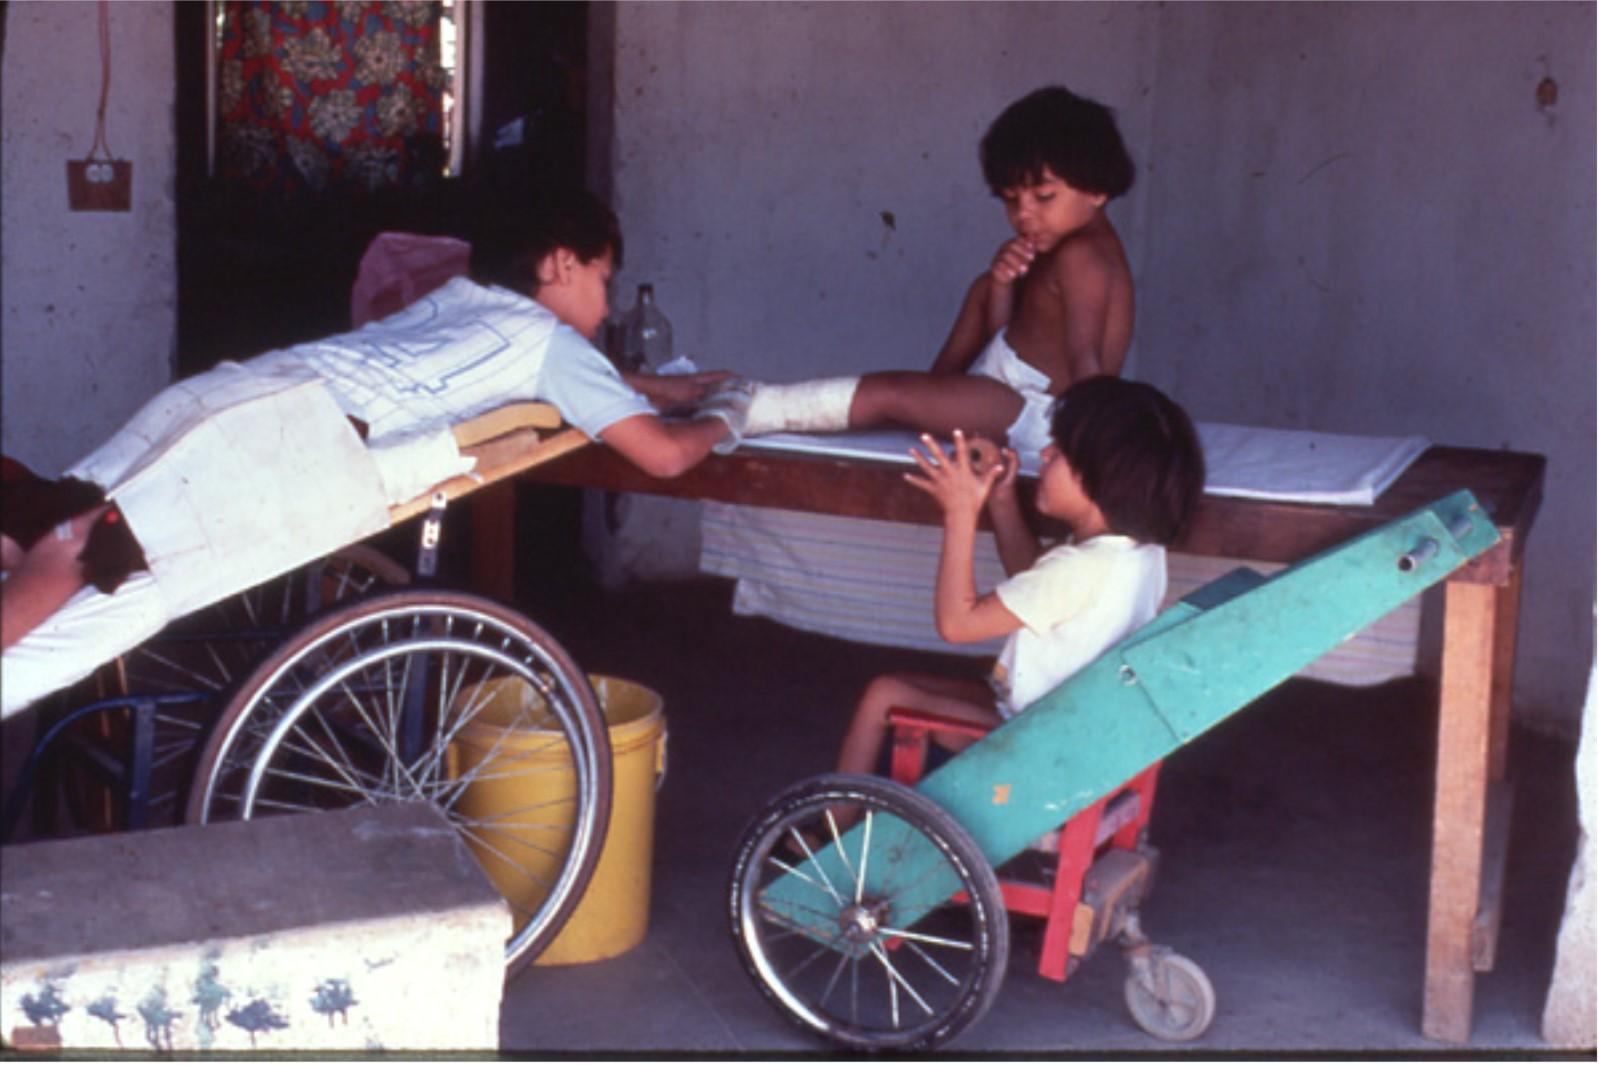 En PROJIMO, personas con discapacidad se atendían unas a otras. Aquí una niña paralizada por un balazo cura las escaras (llagas) de una niña con espina bífida.